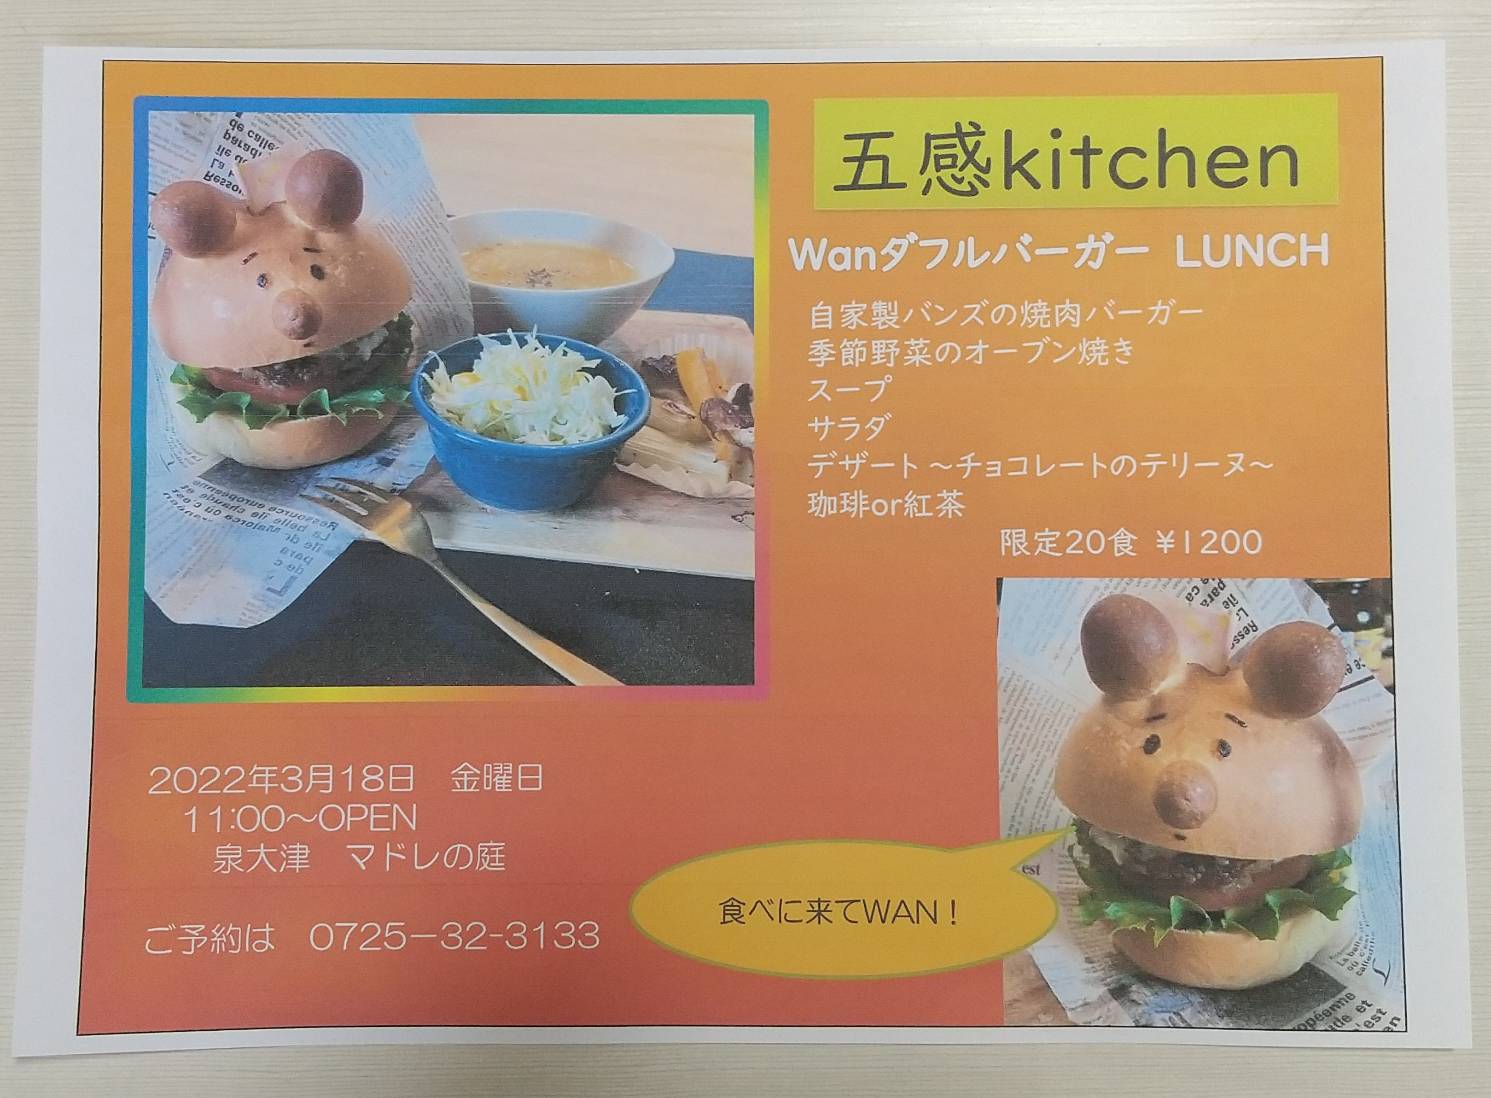 五感Kitchen